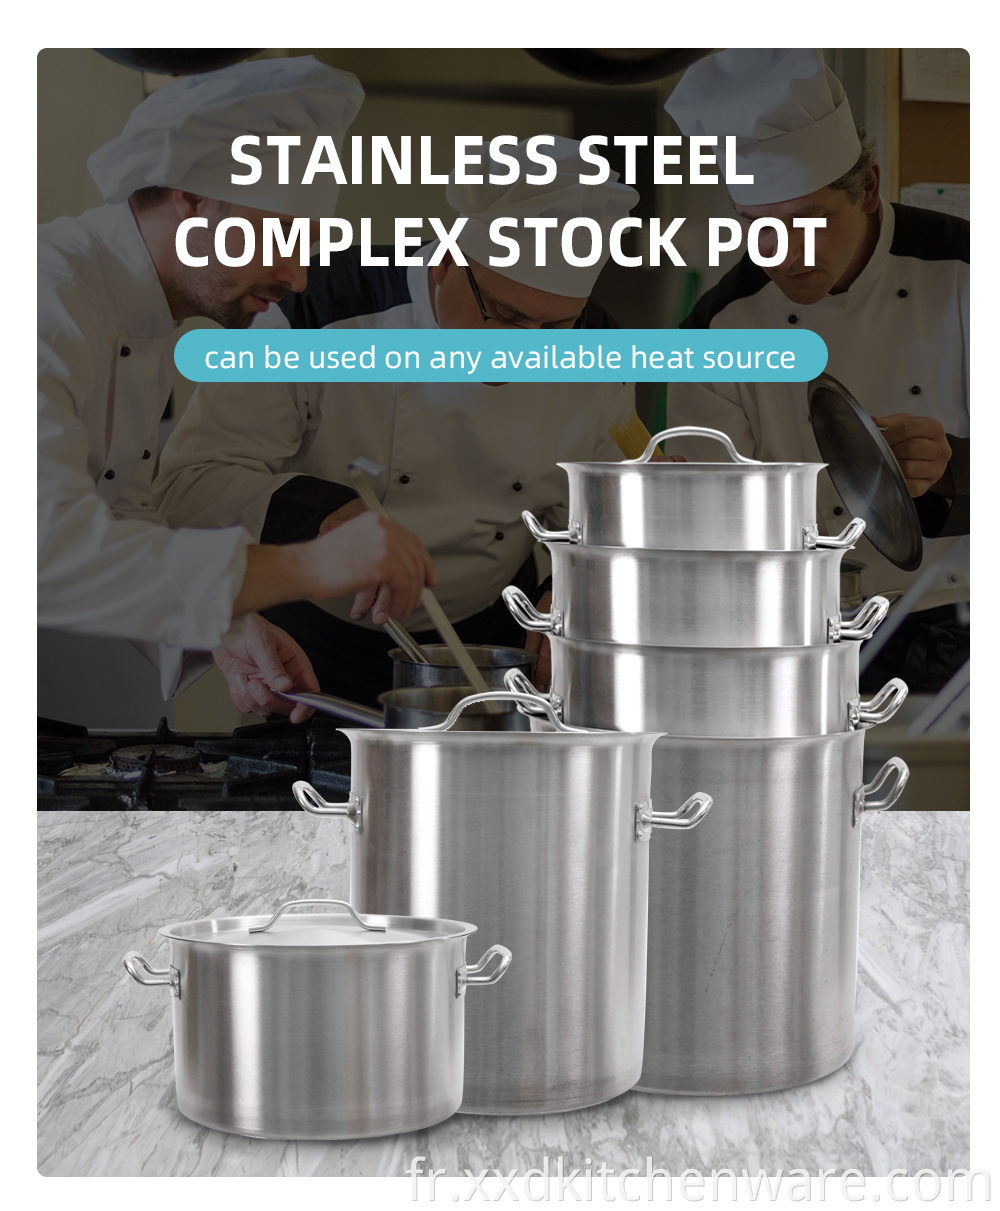 Stainless steel stockpot